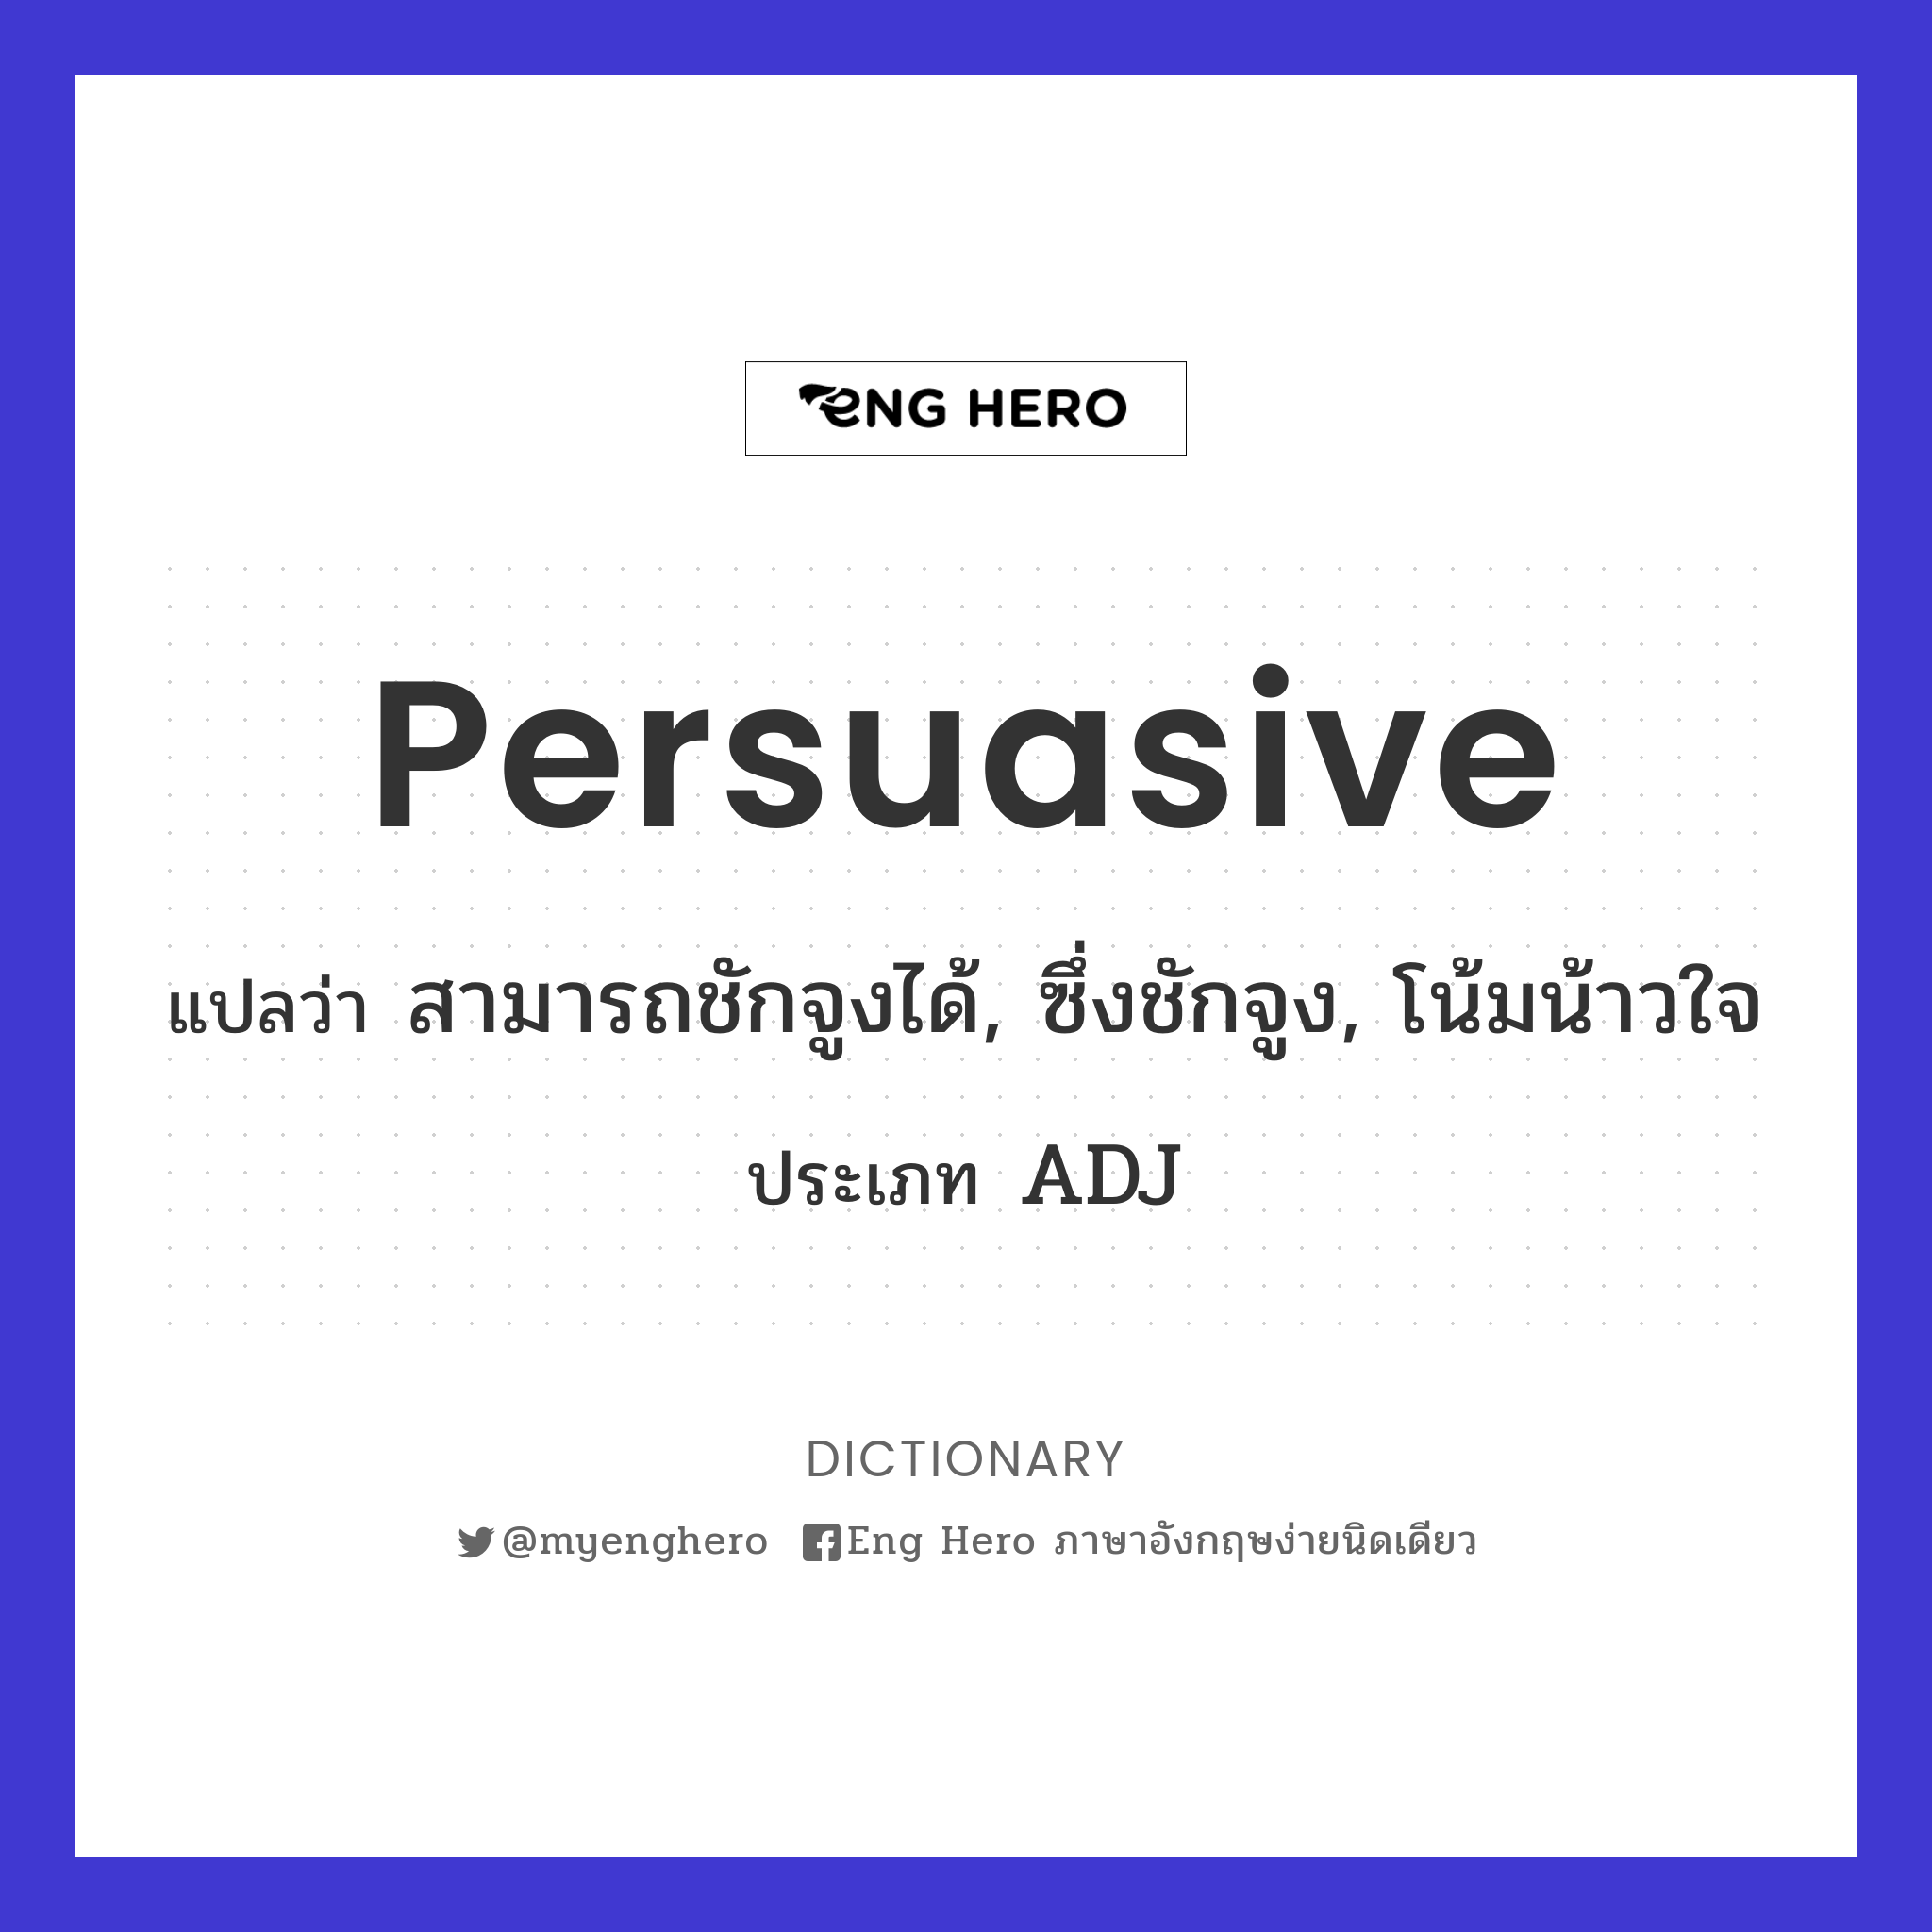 persuasive